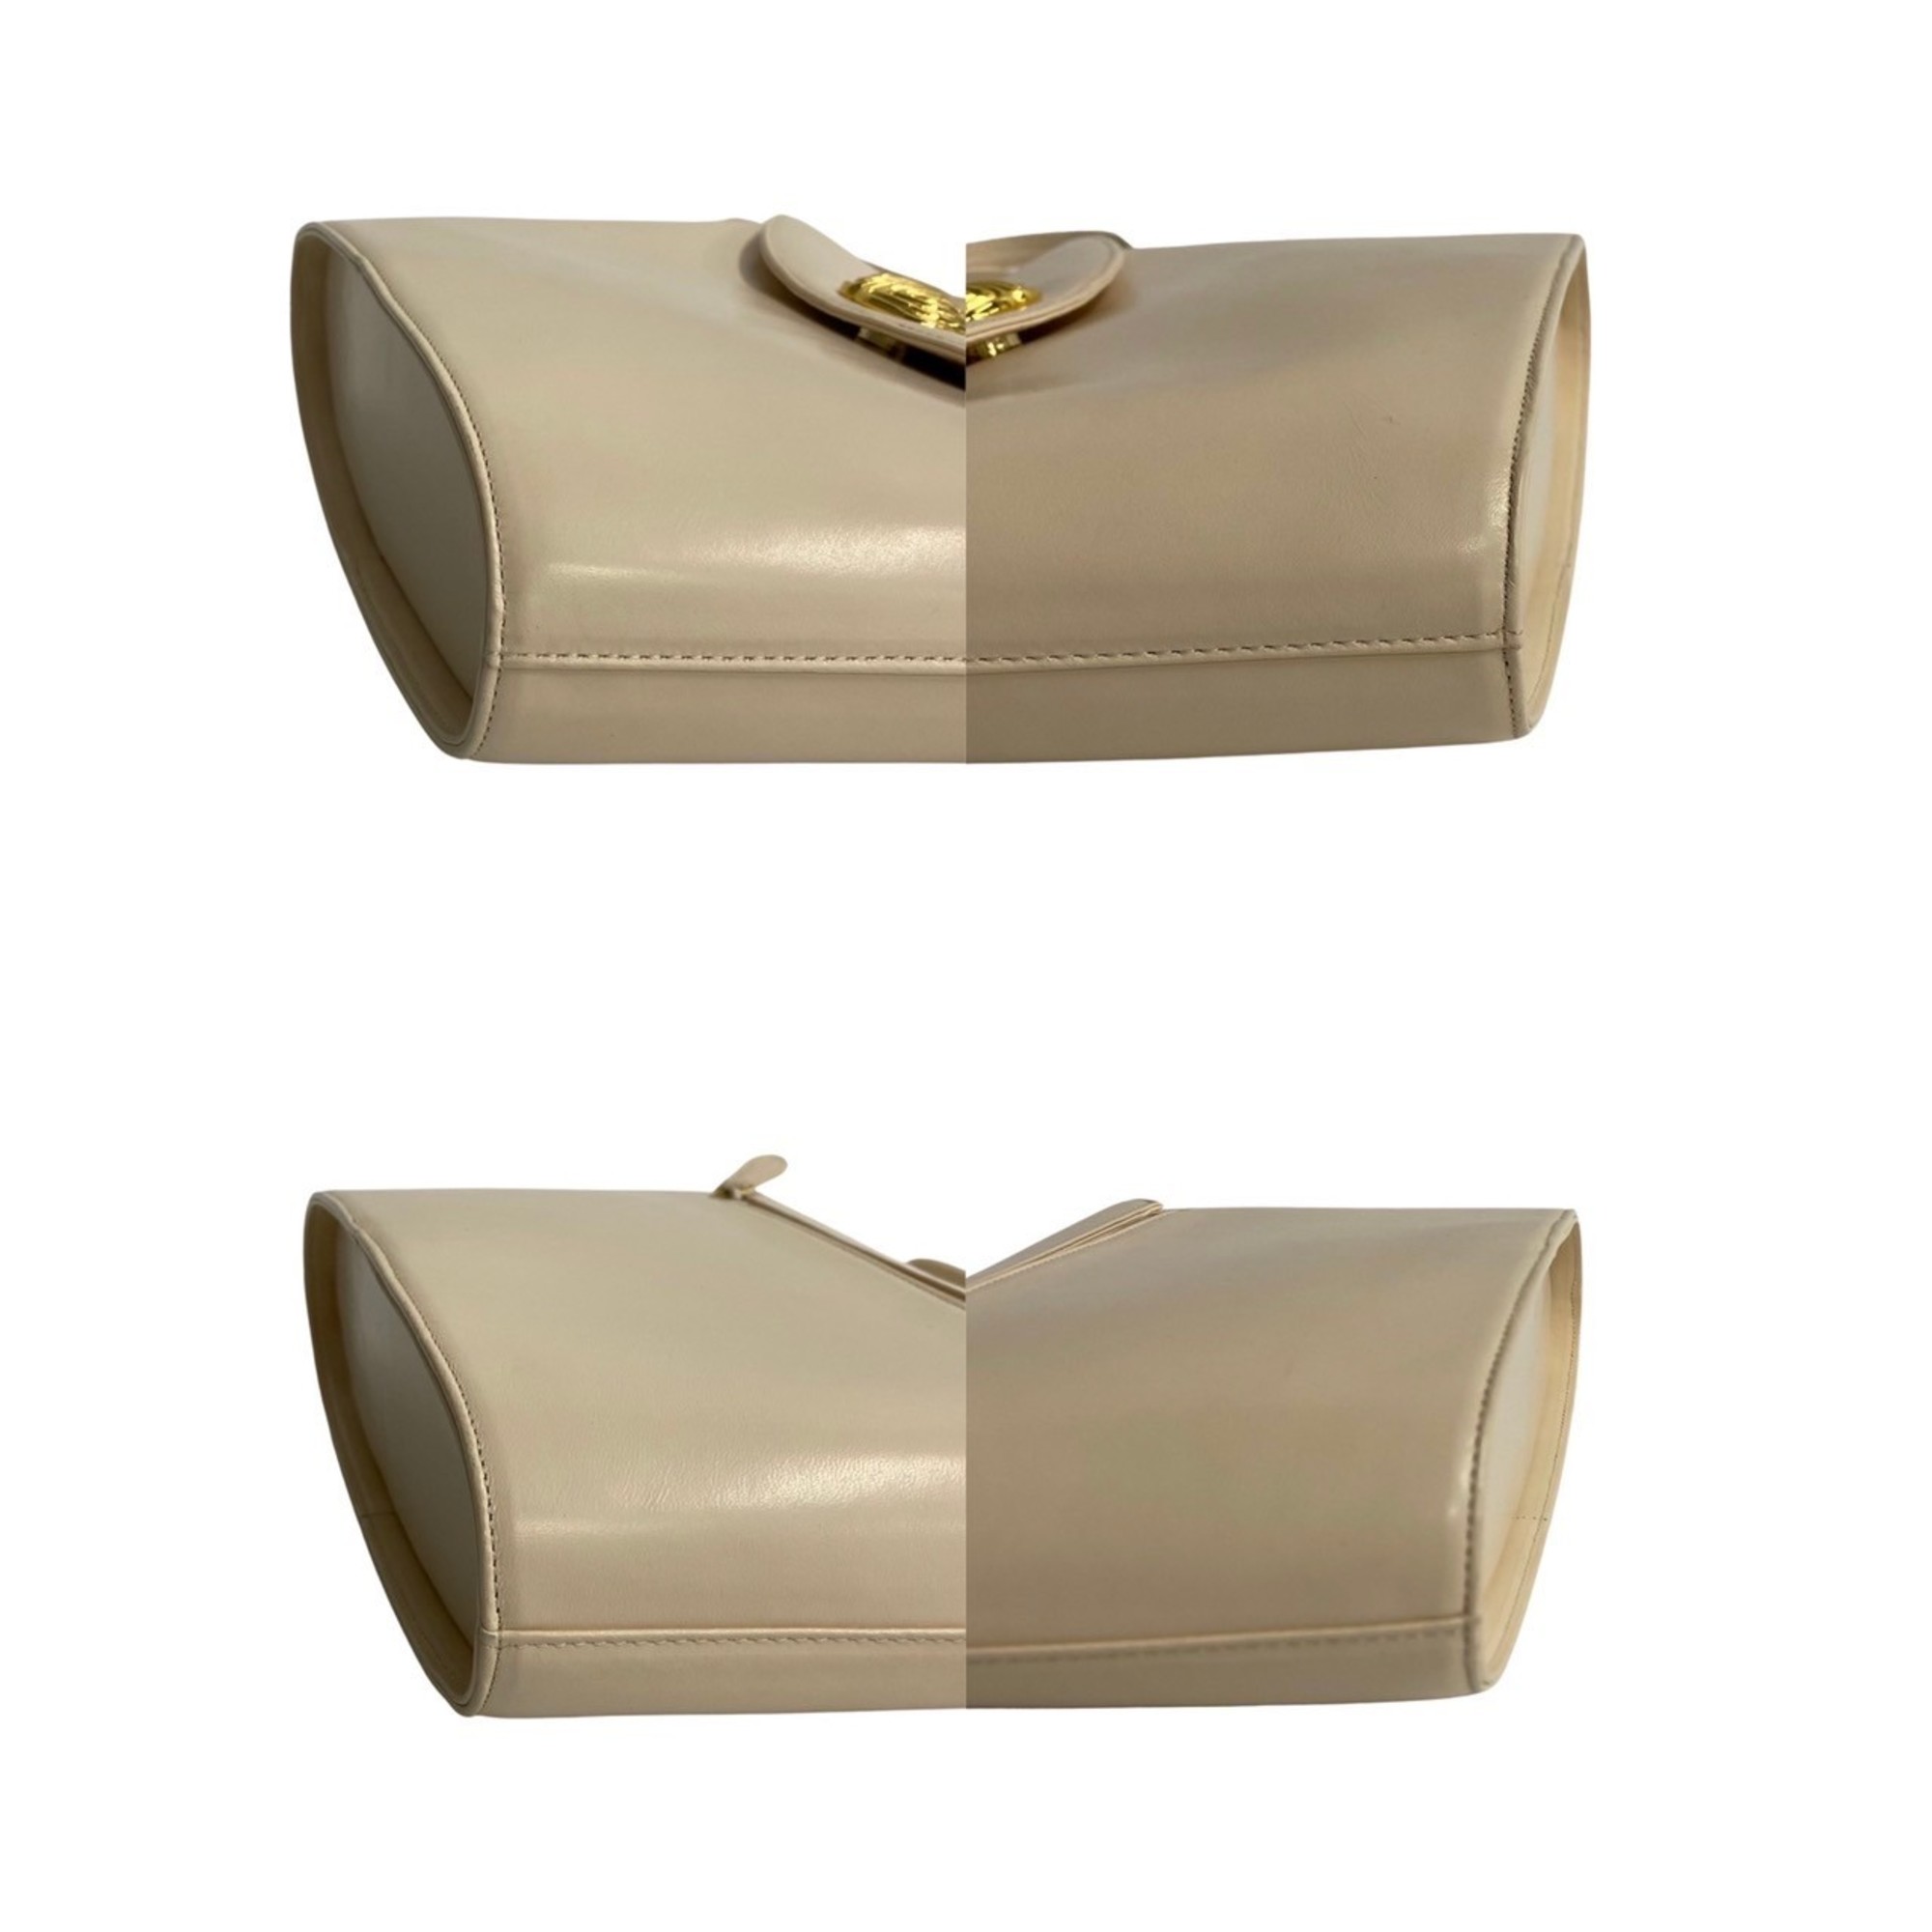 Givenchy Hardware Leather Handbag Tote Bag Ivory White 68416